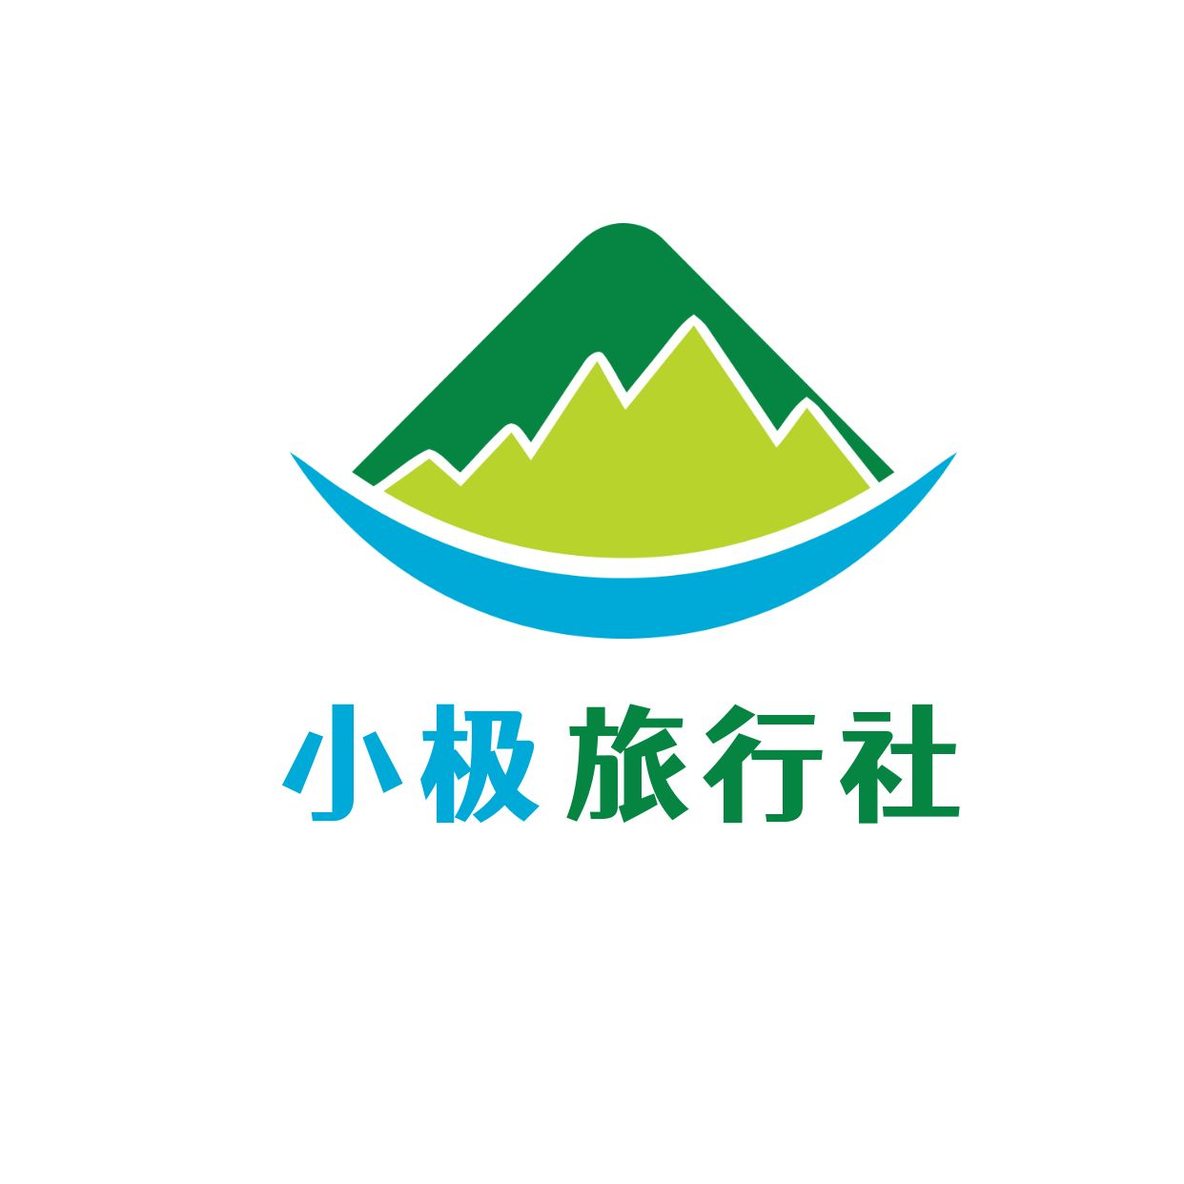 旅游双重山logo